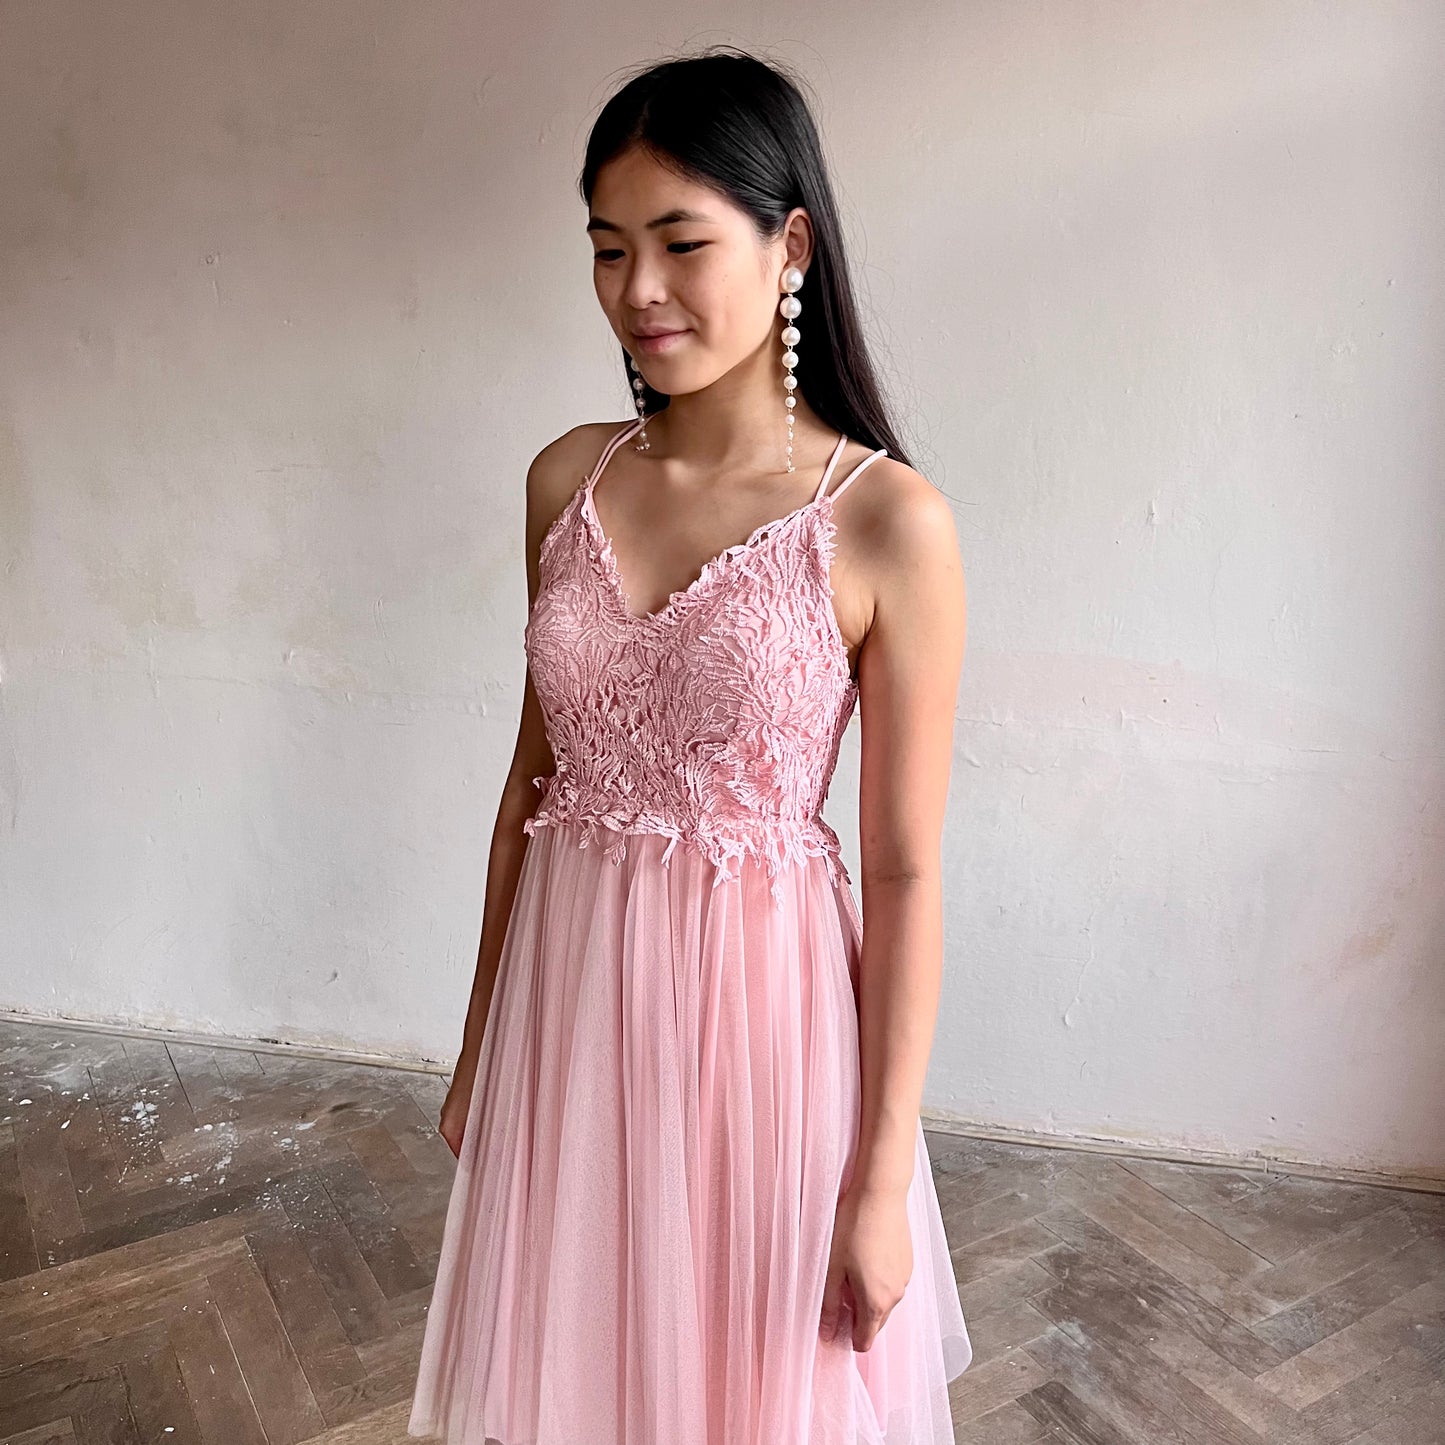 Modelka asijského původu pózující zepředu oblečená v krátkých světle růžových společenských šatech 